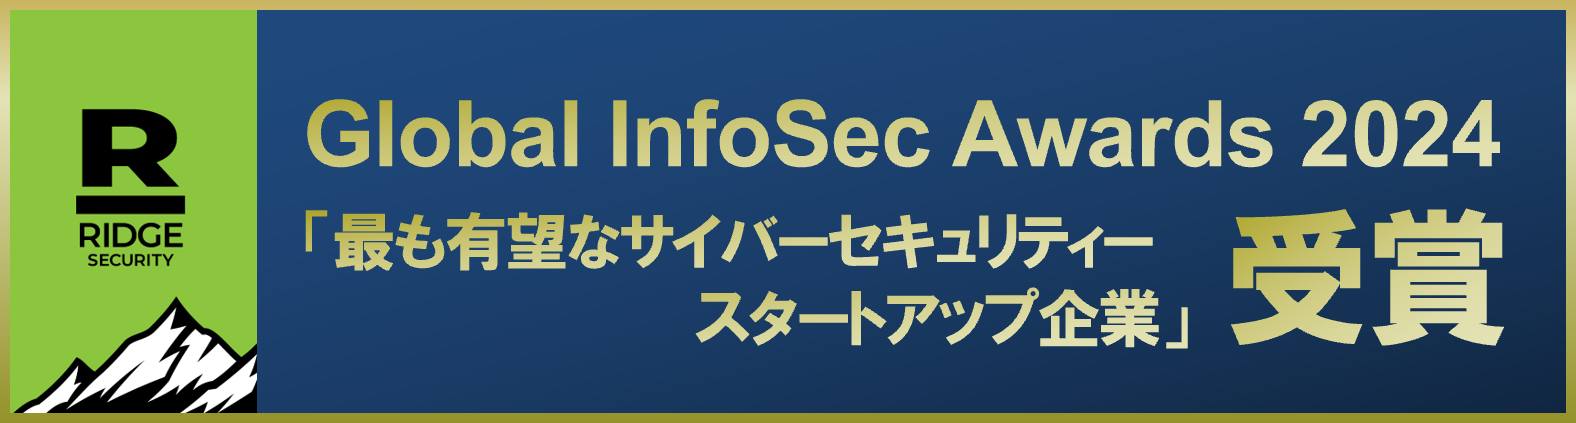 Ridge Security Global InfoSec Awards 2024受賞